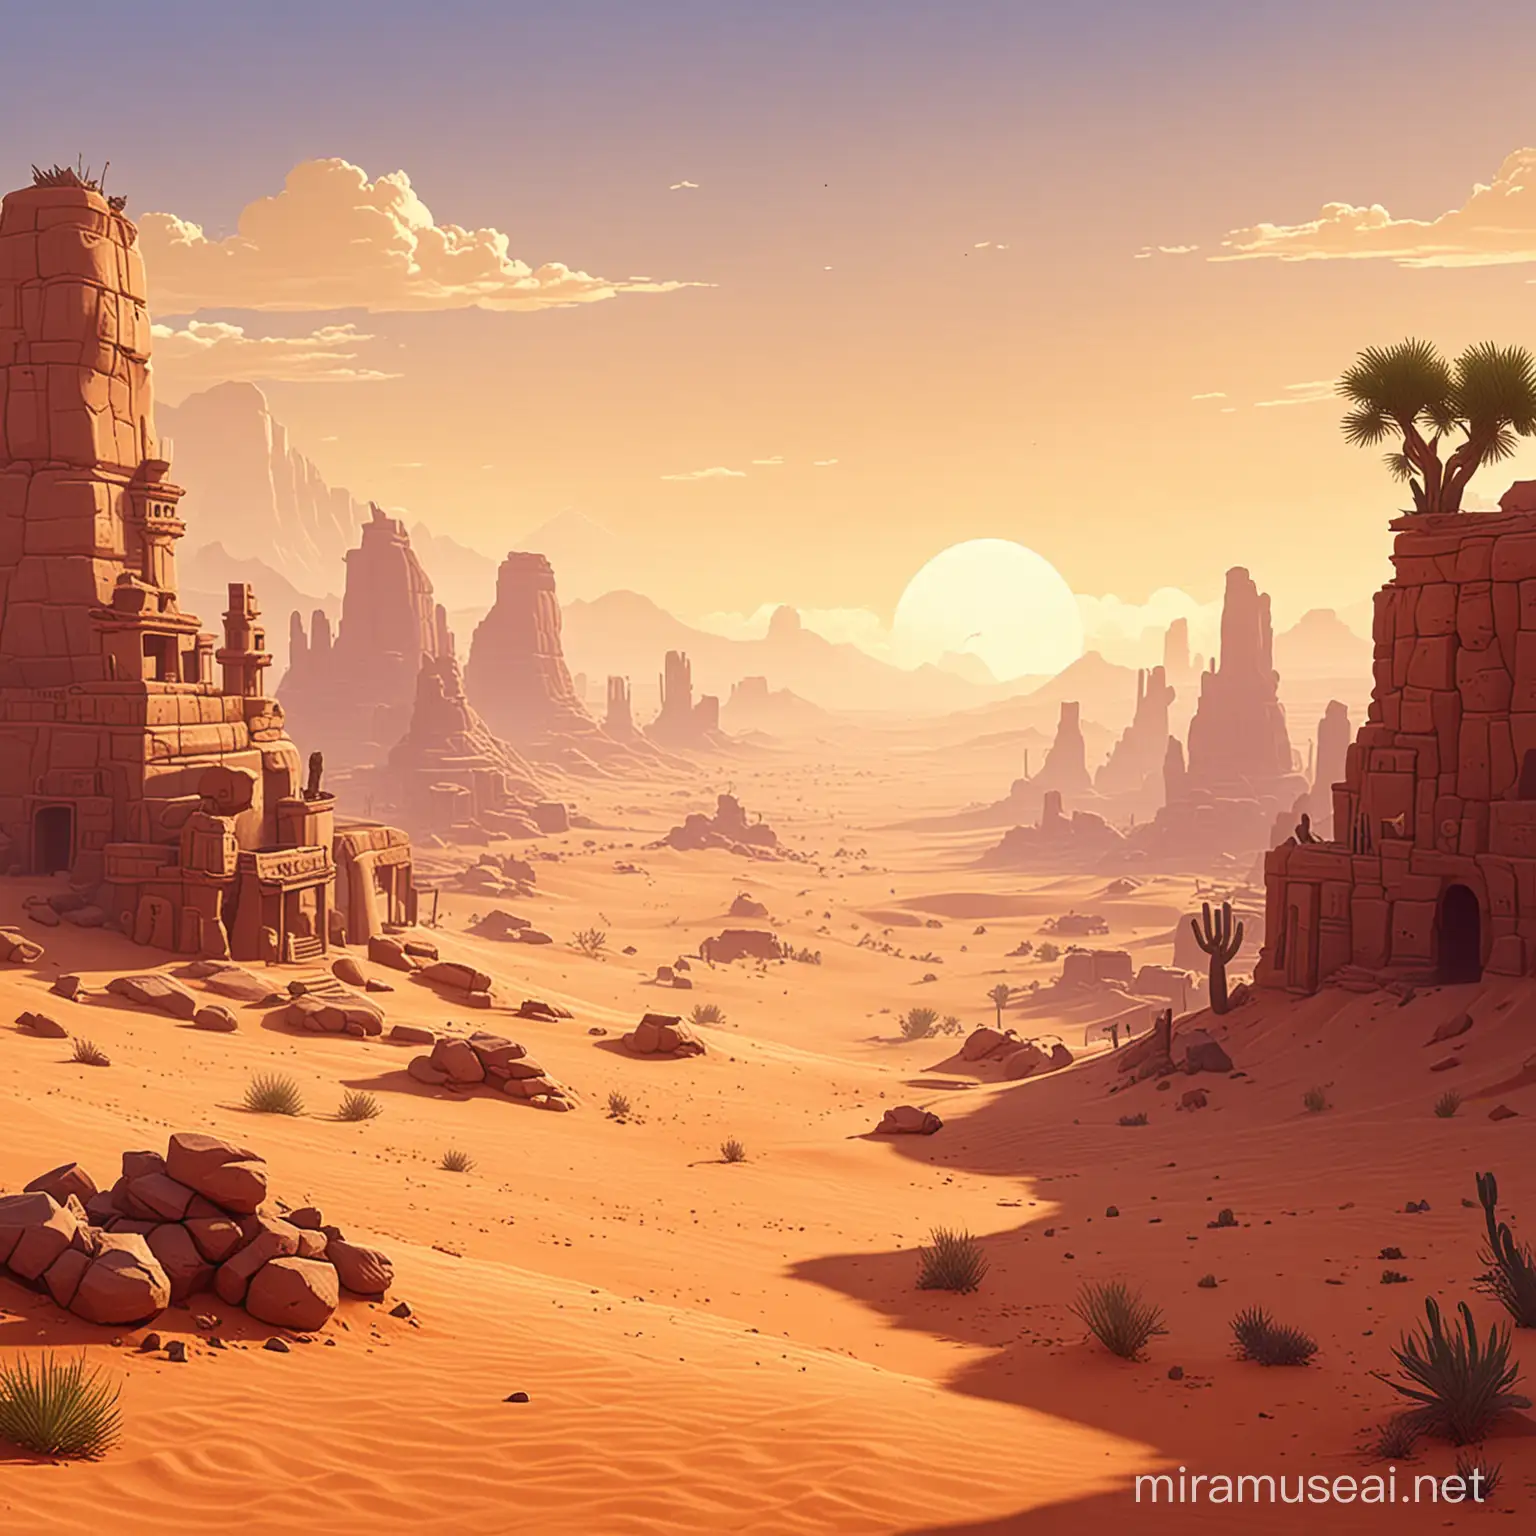 fon, background, game, platformer, desert, 